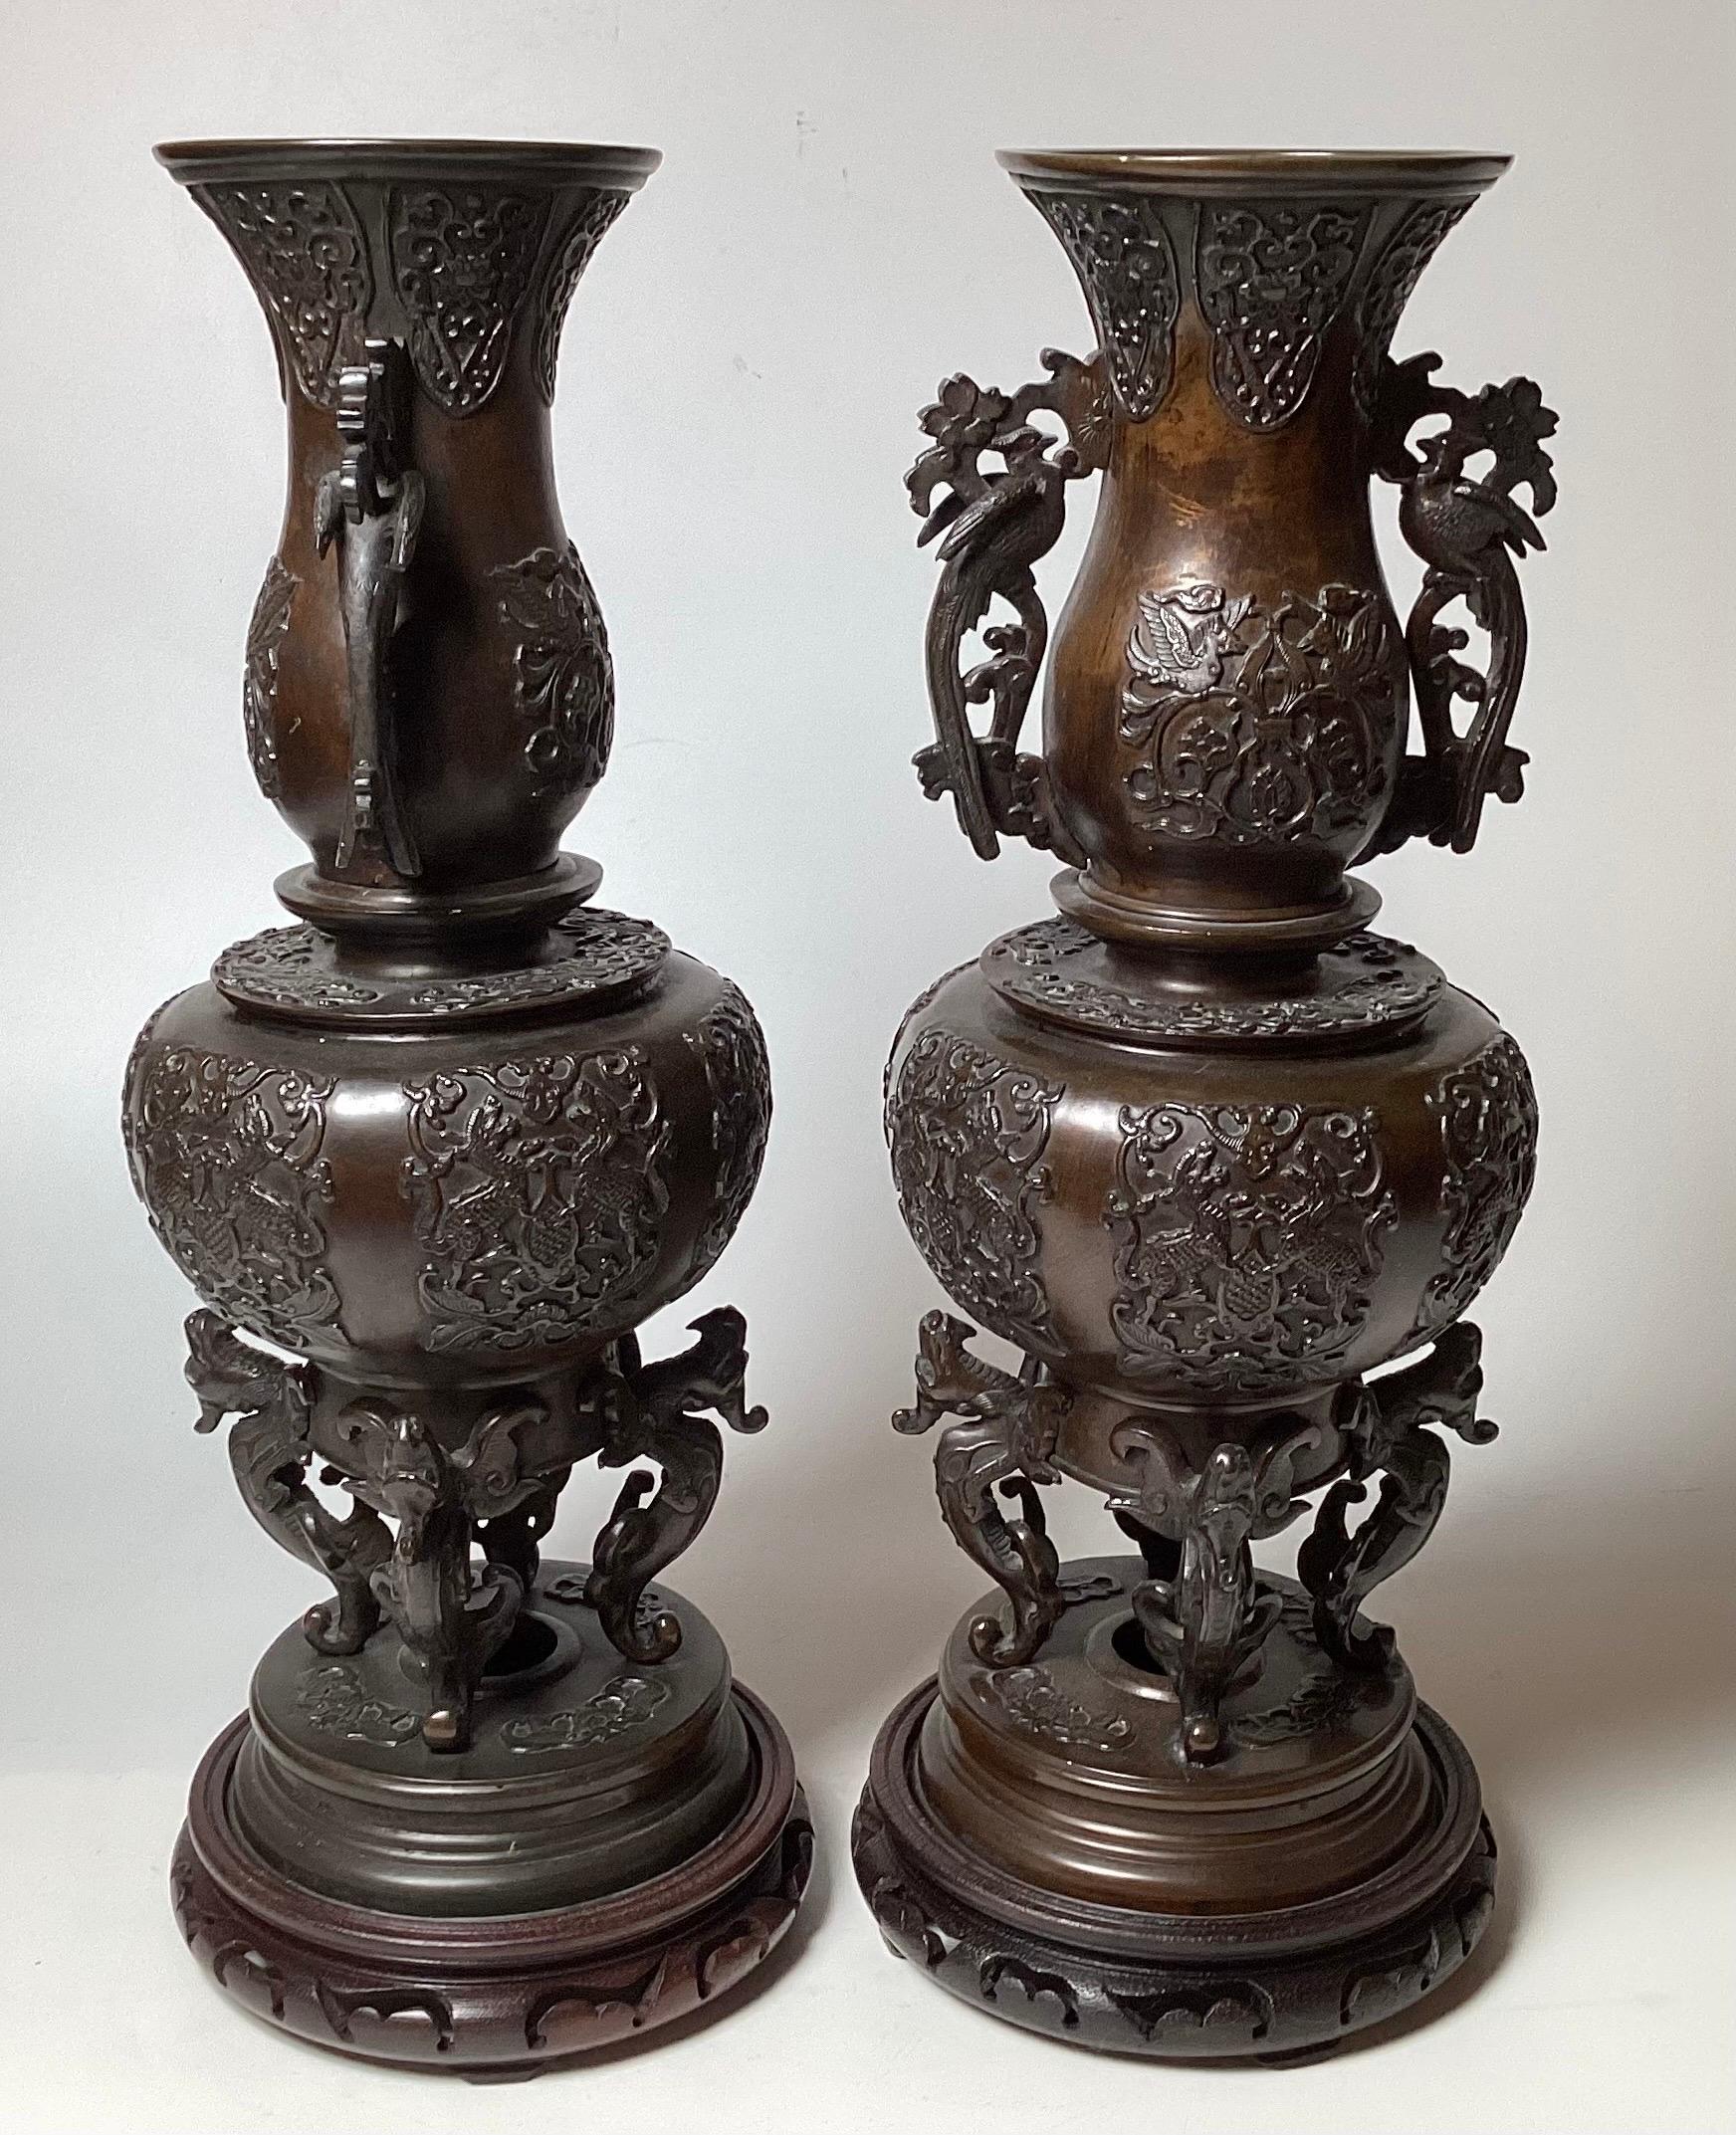 Ein Paar patinierte Bronze figurative hohe Meiji Periode Garnitur Vasen, die ursprüngliche Rinde braun patiniert mit sehr detaillierten Oberfläche und Griffe.  19 Zoll groß 